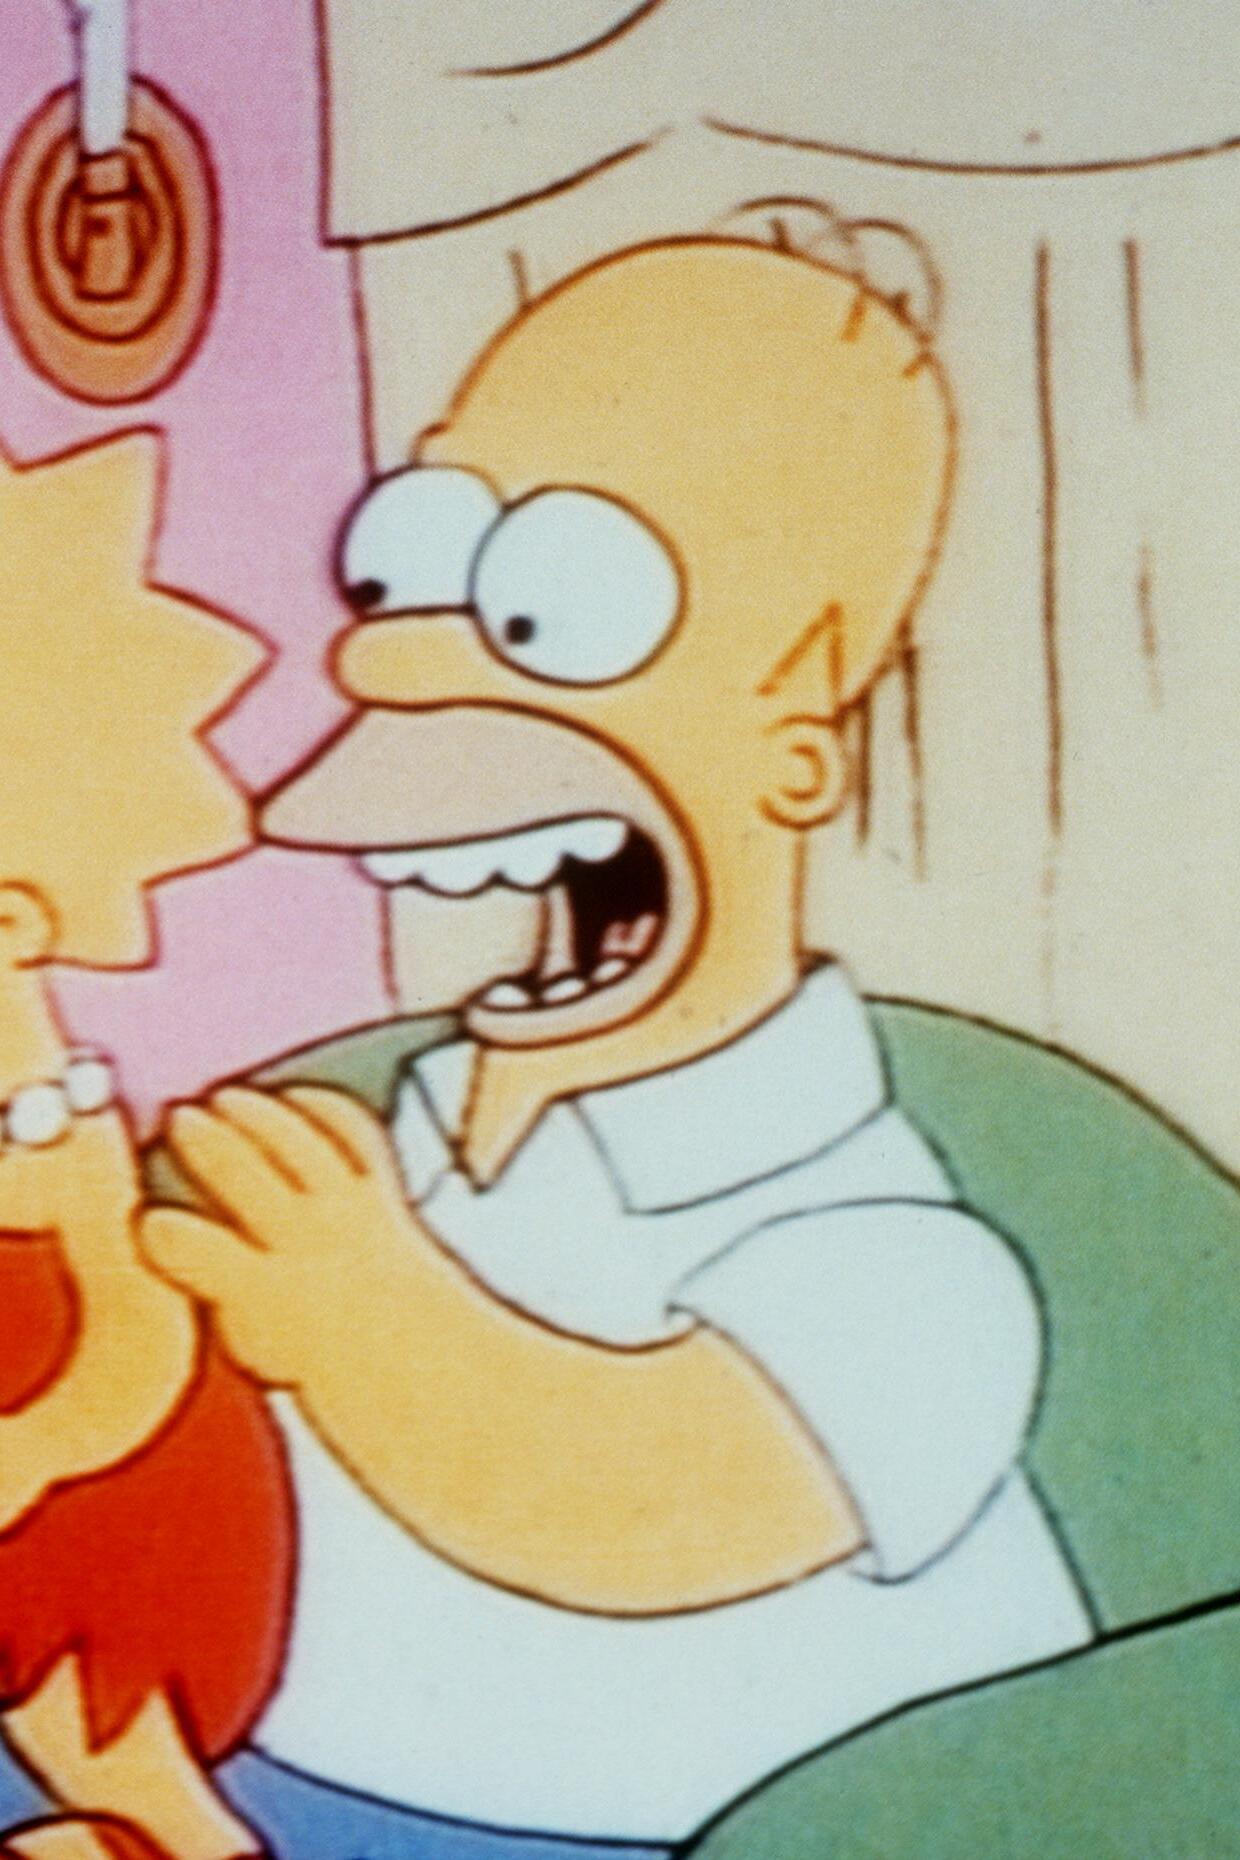 Les Simpson - Bart le génie